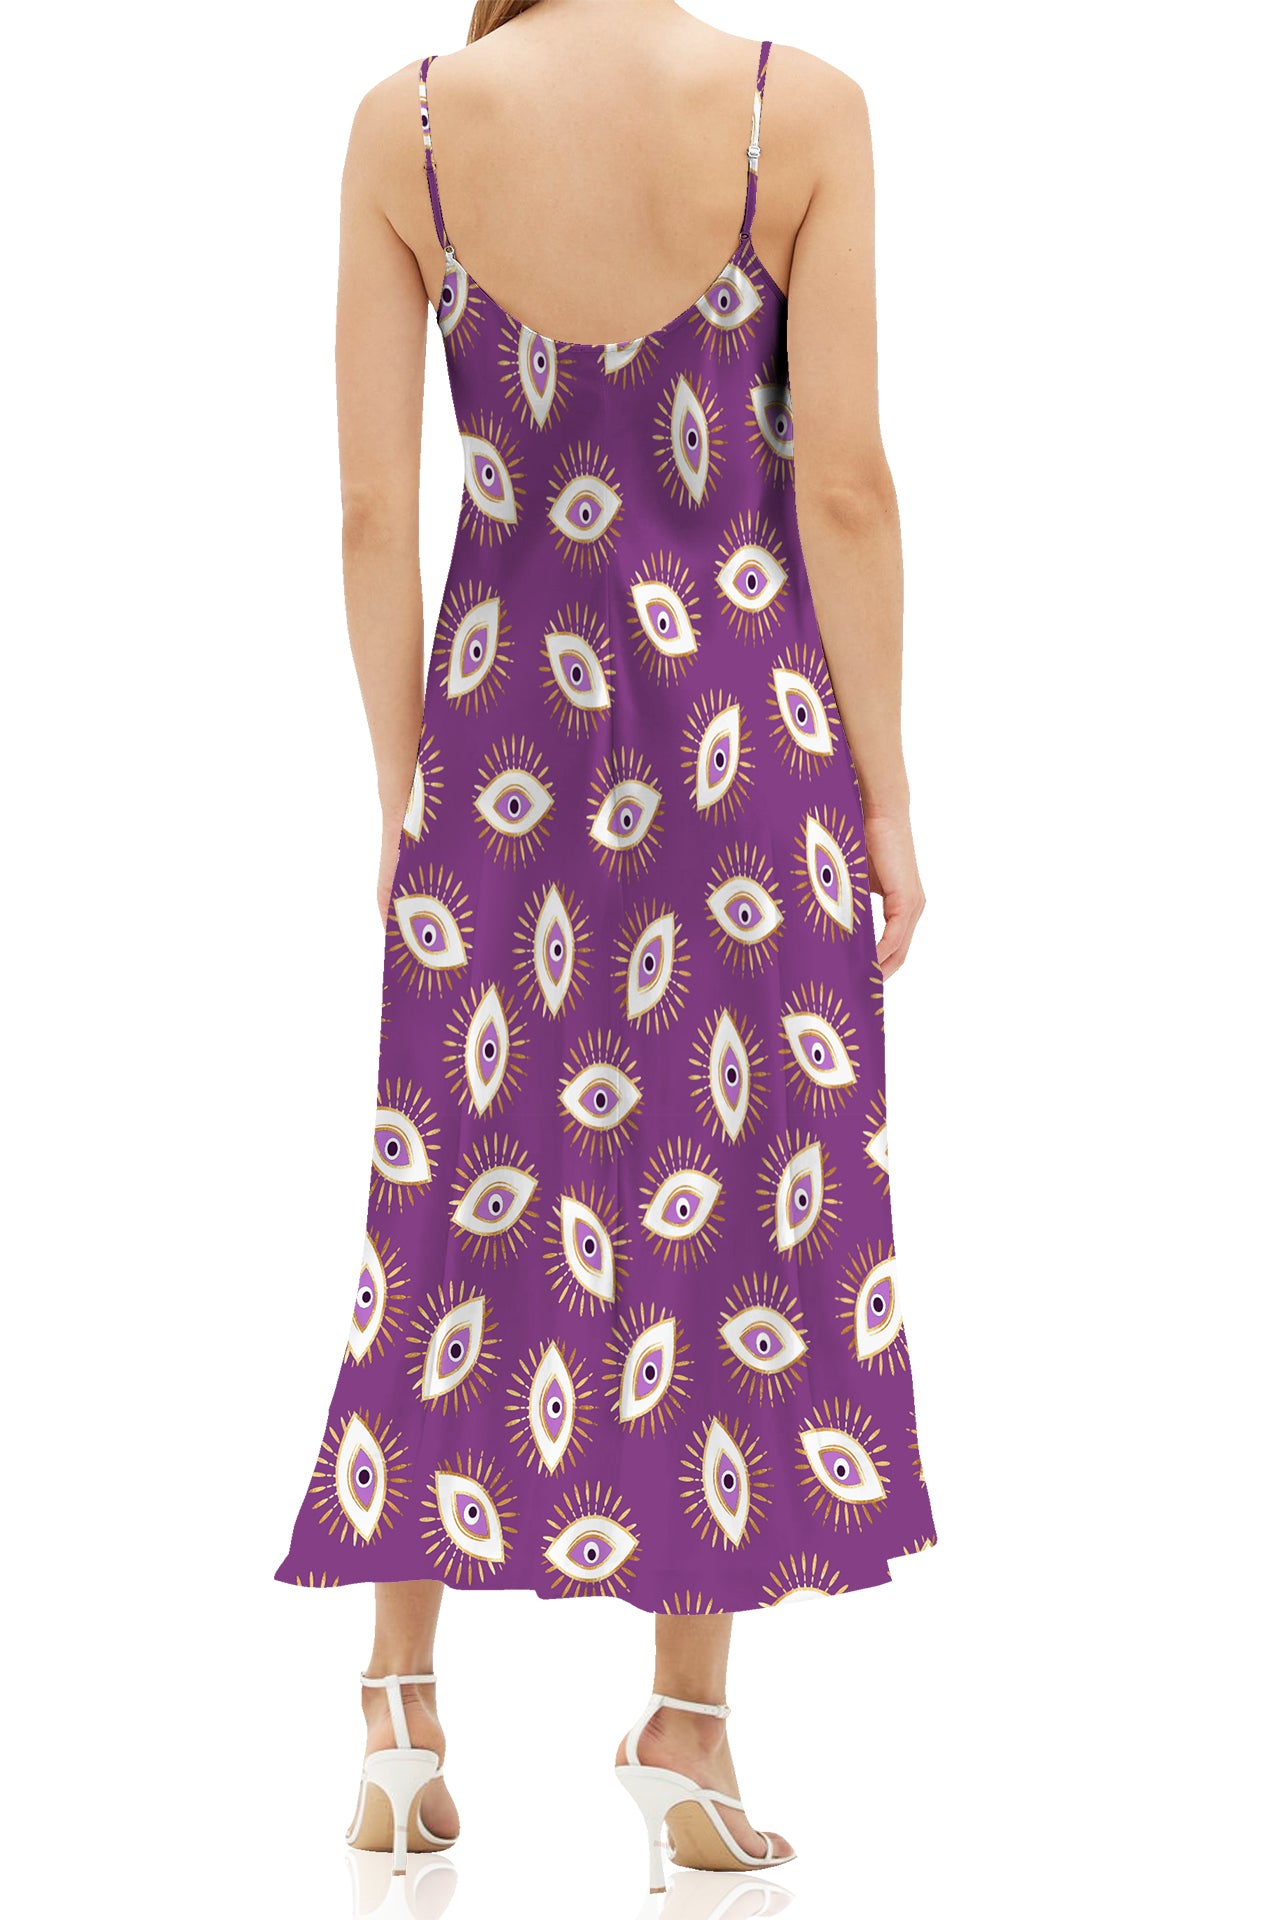 "purple cami dress" "evil eye print dress" "cami strap midi dress" "Kyle X Shahida"